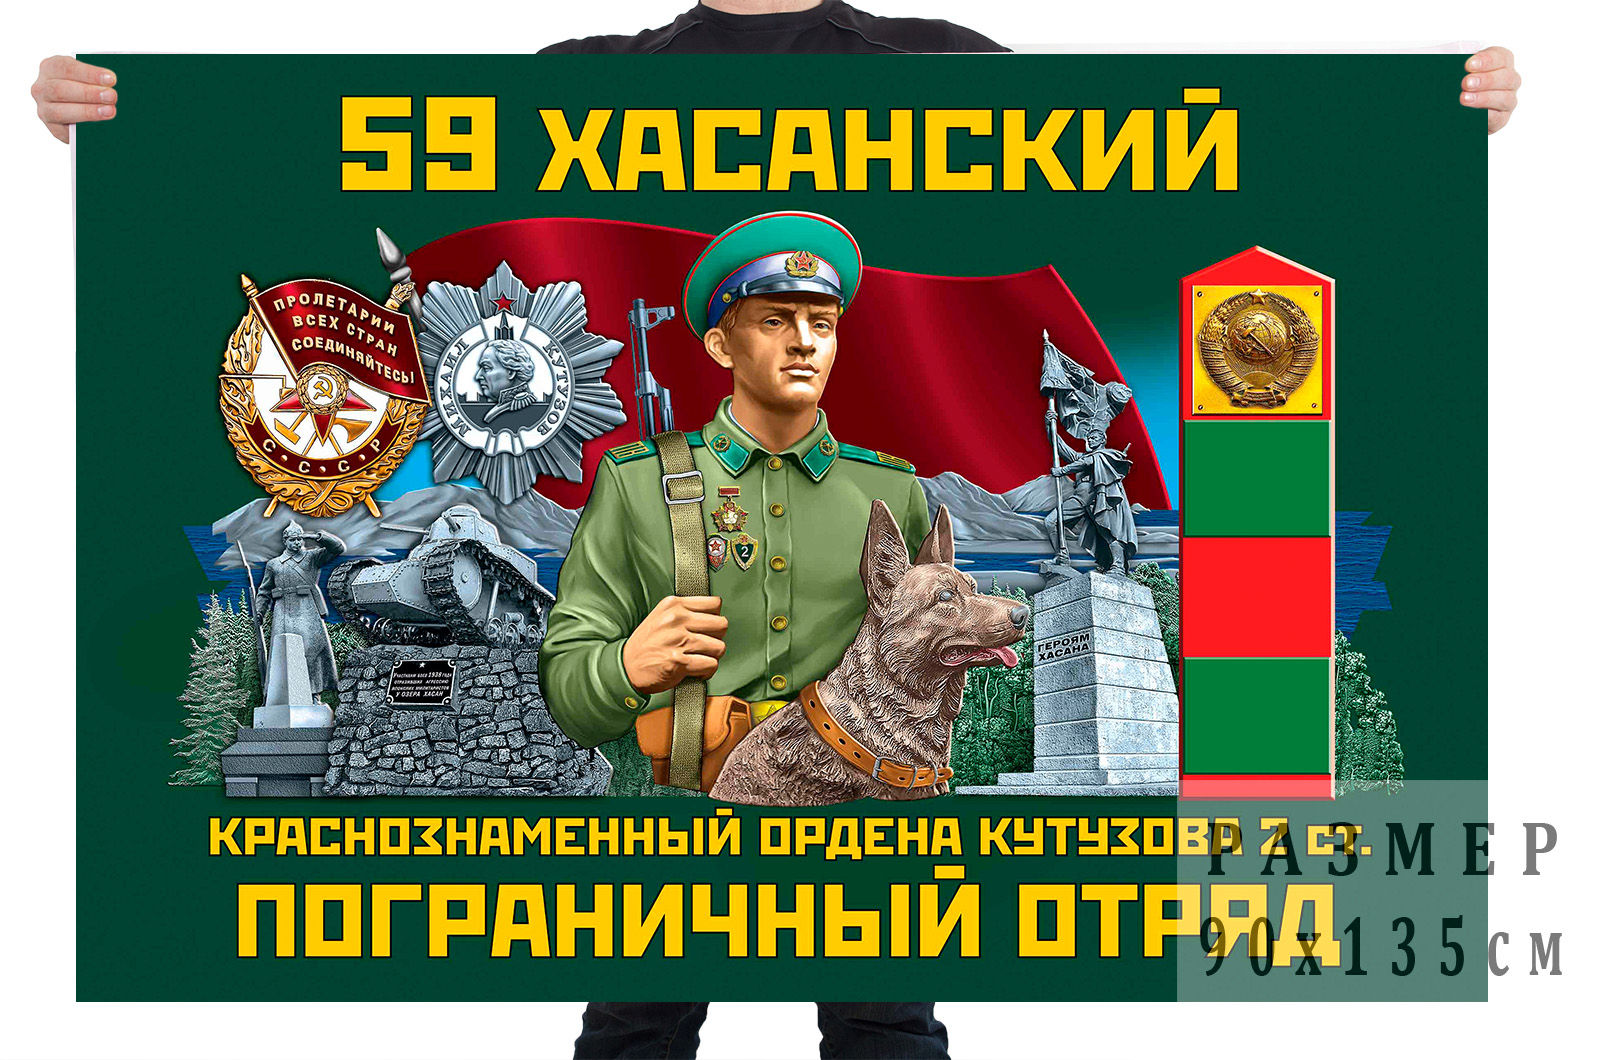 Флаг 59 Хасанский Краснознаменный ордена Кутузова 2-й степени пограничный отряд